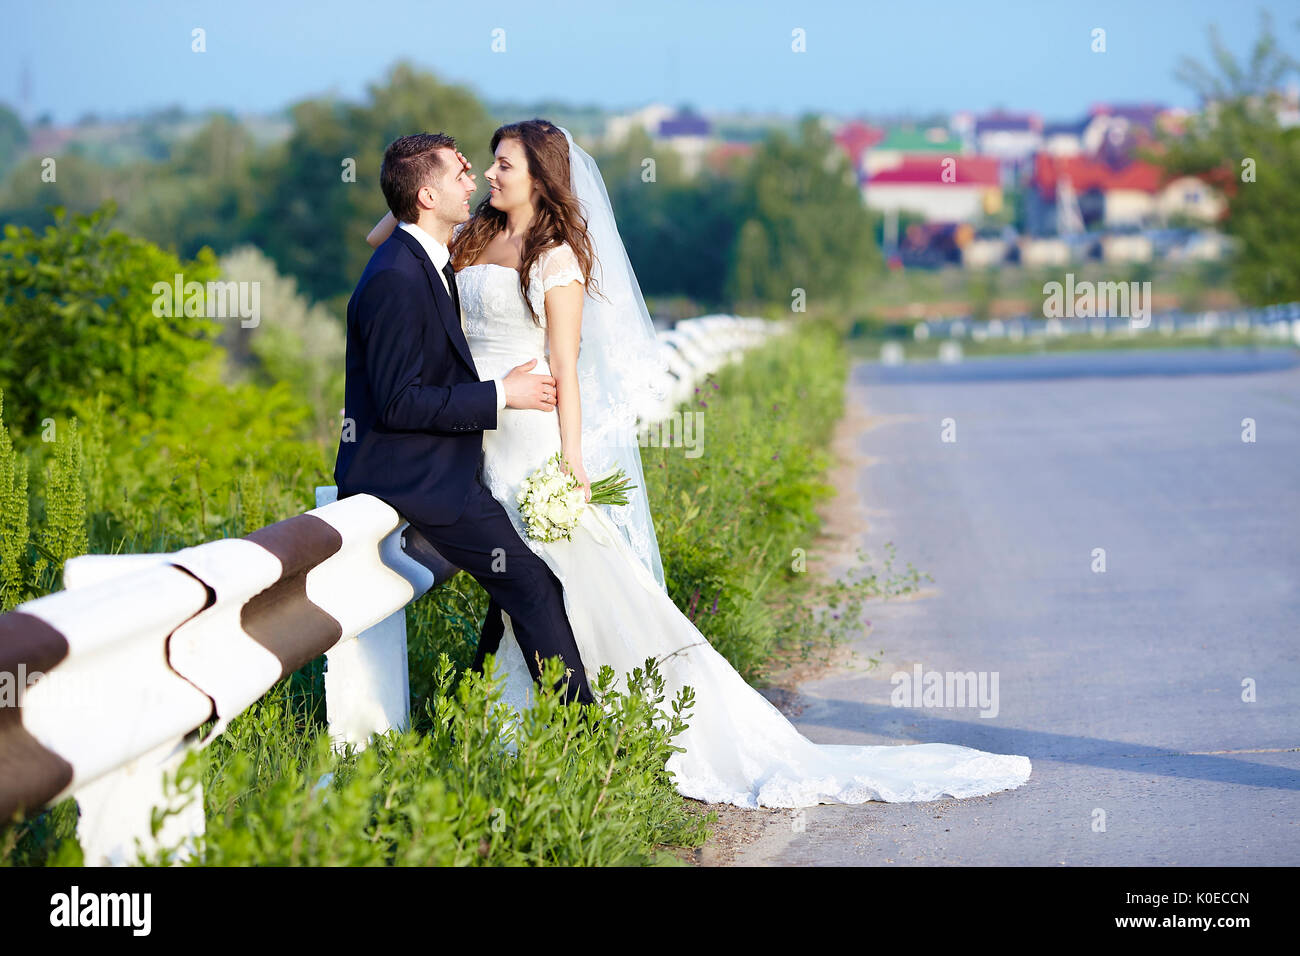 Happy Bride and Groom smiling rire sur la route sur un mariage Banque D'Images